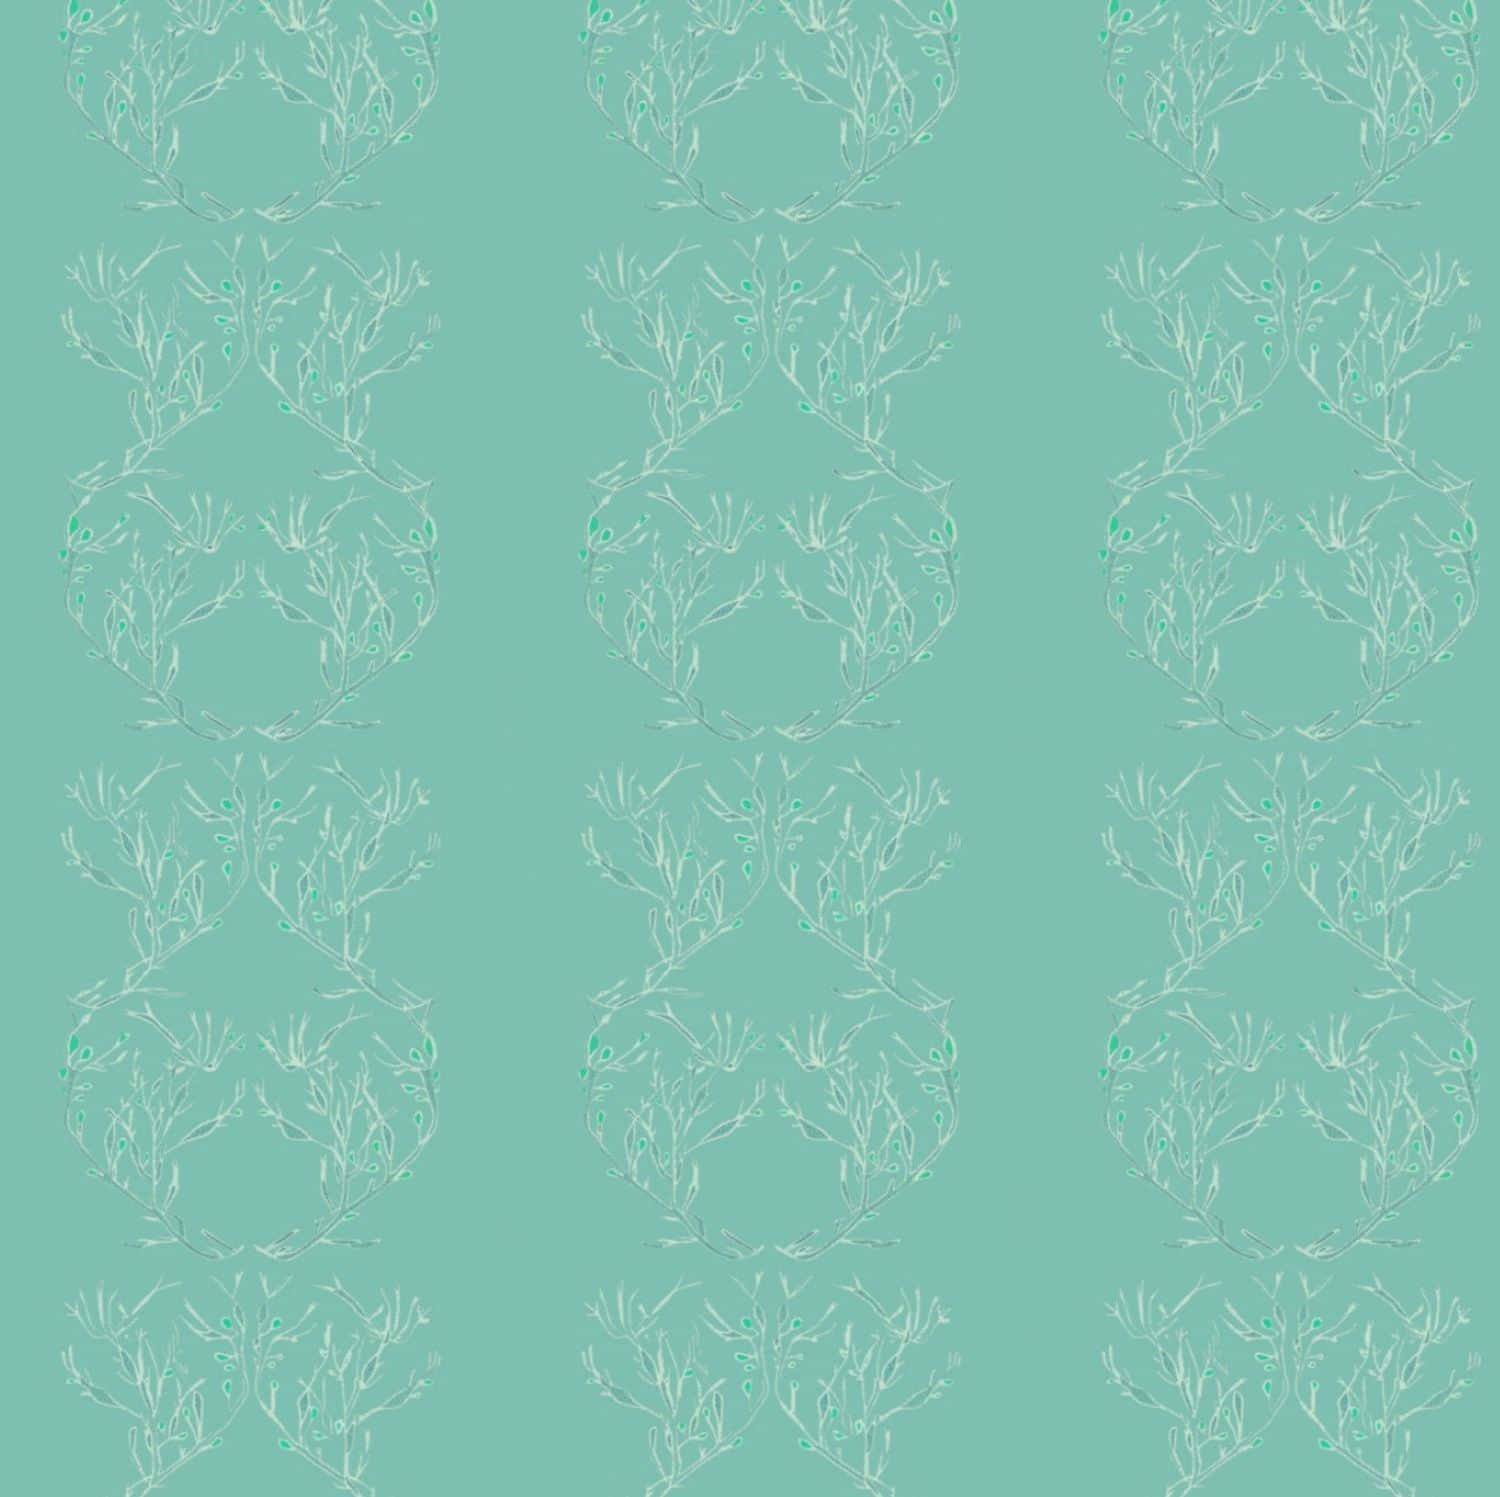 Seafoam Green Abstract Wallpaper Wallpaper